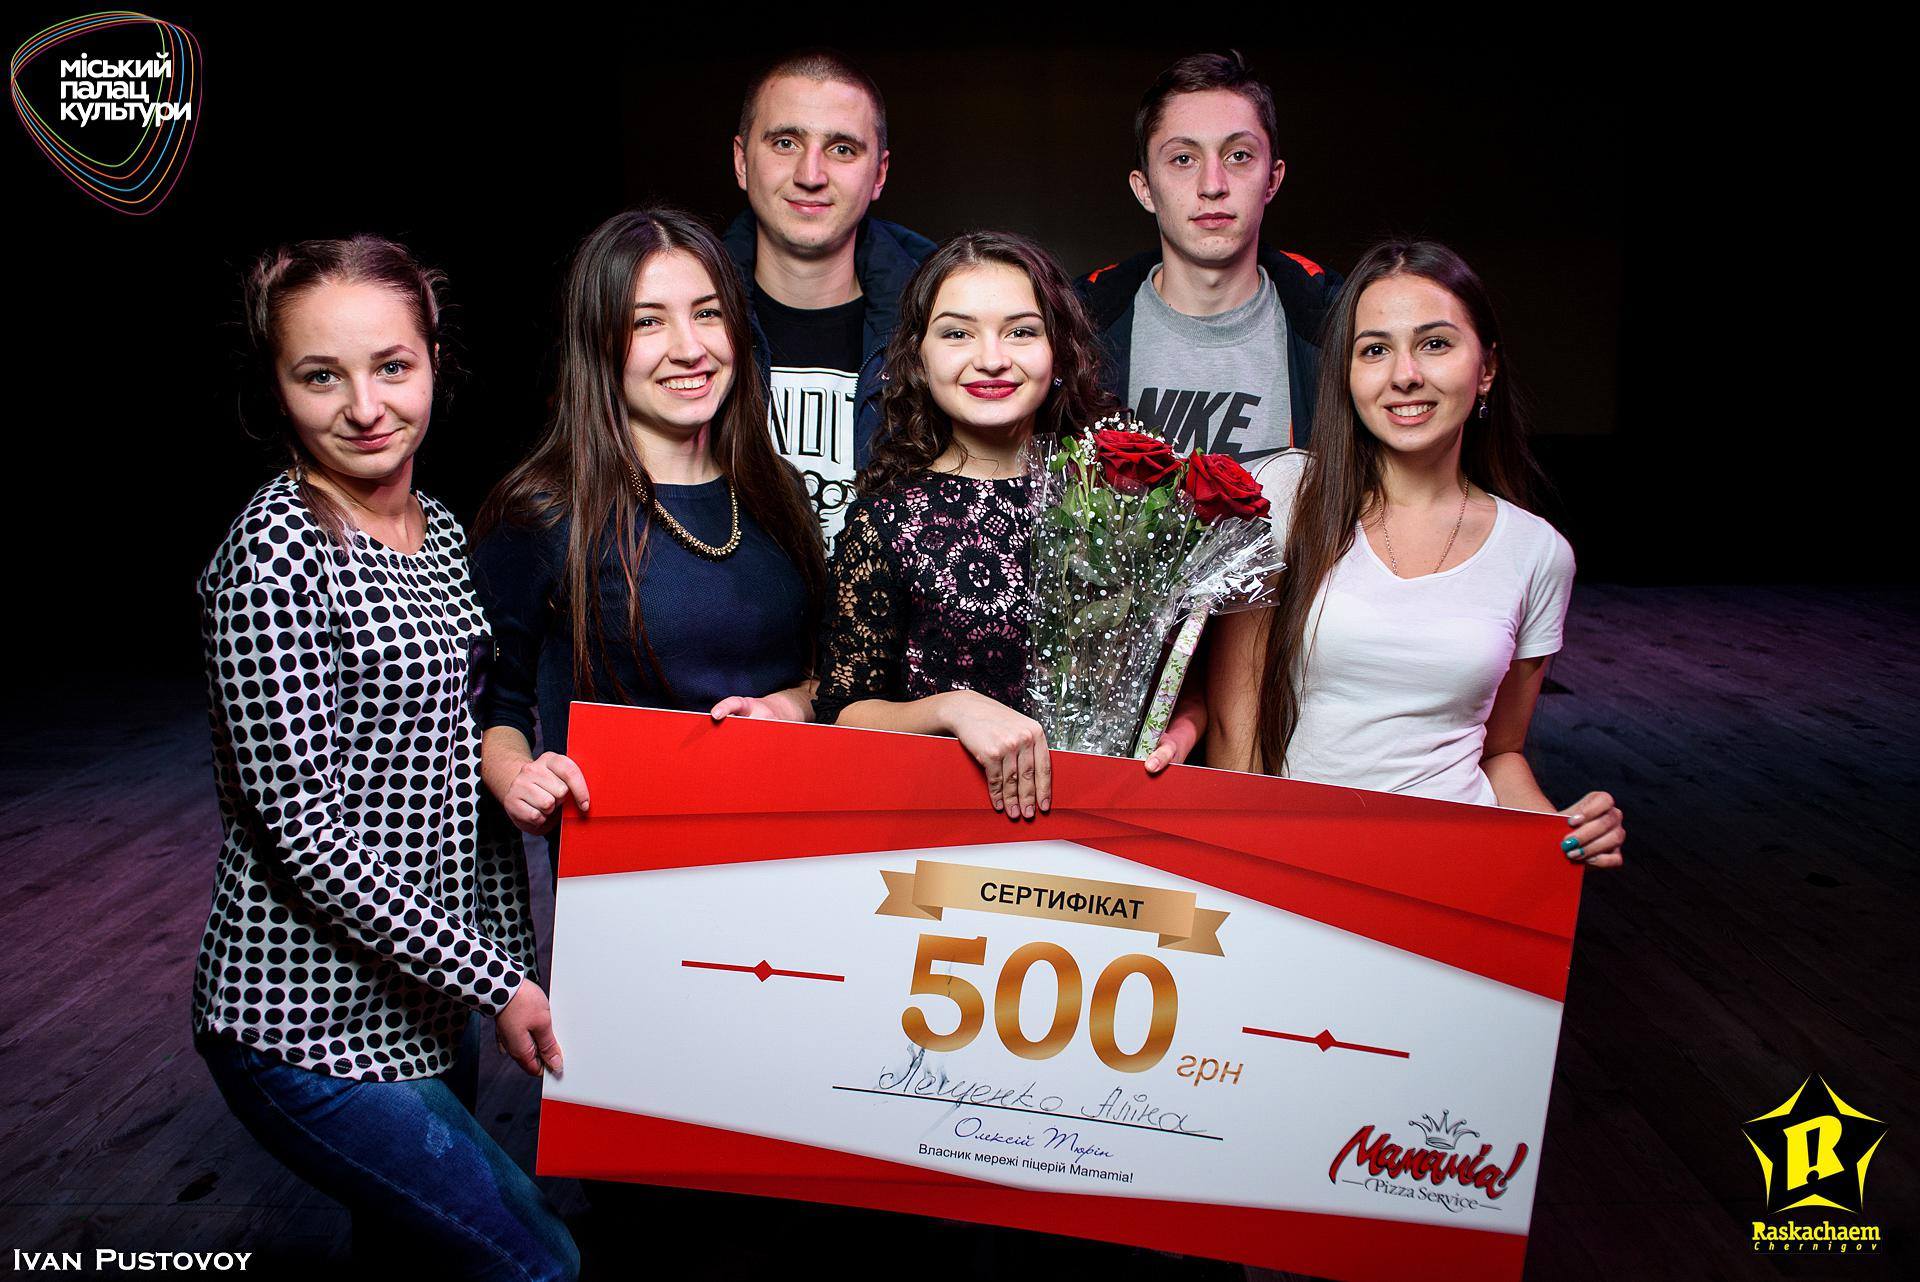 Відомо, хто представлятиме Чернігівщину на Всеукраїнському студентському конкурсі